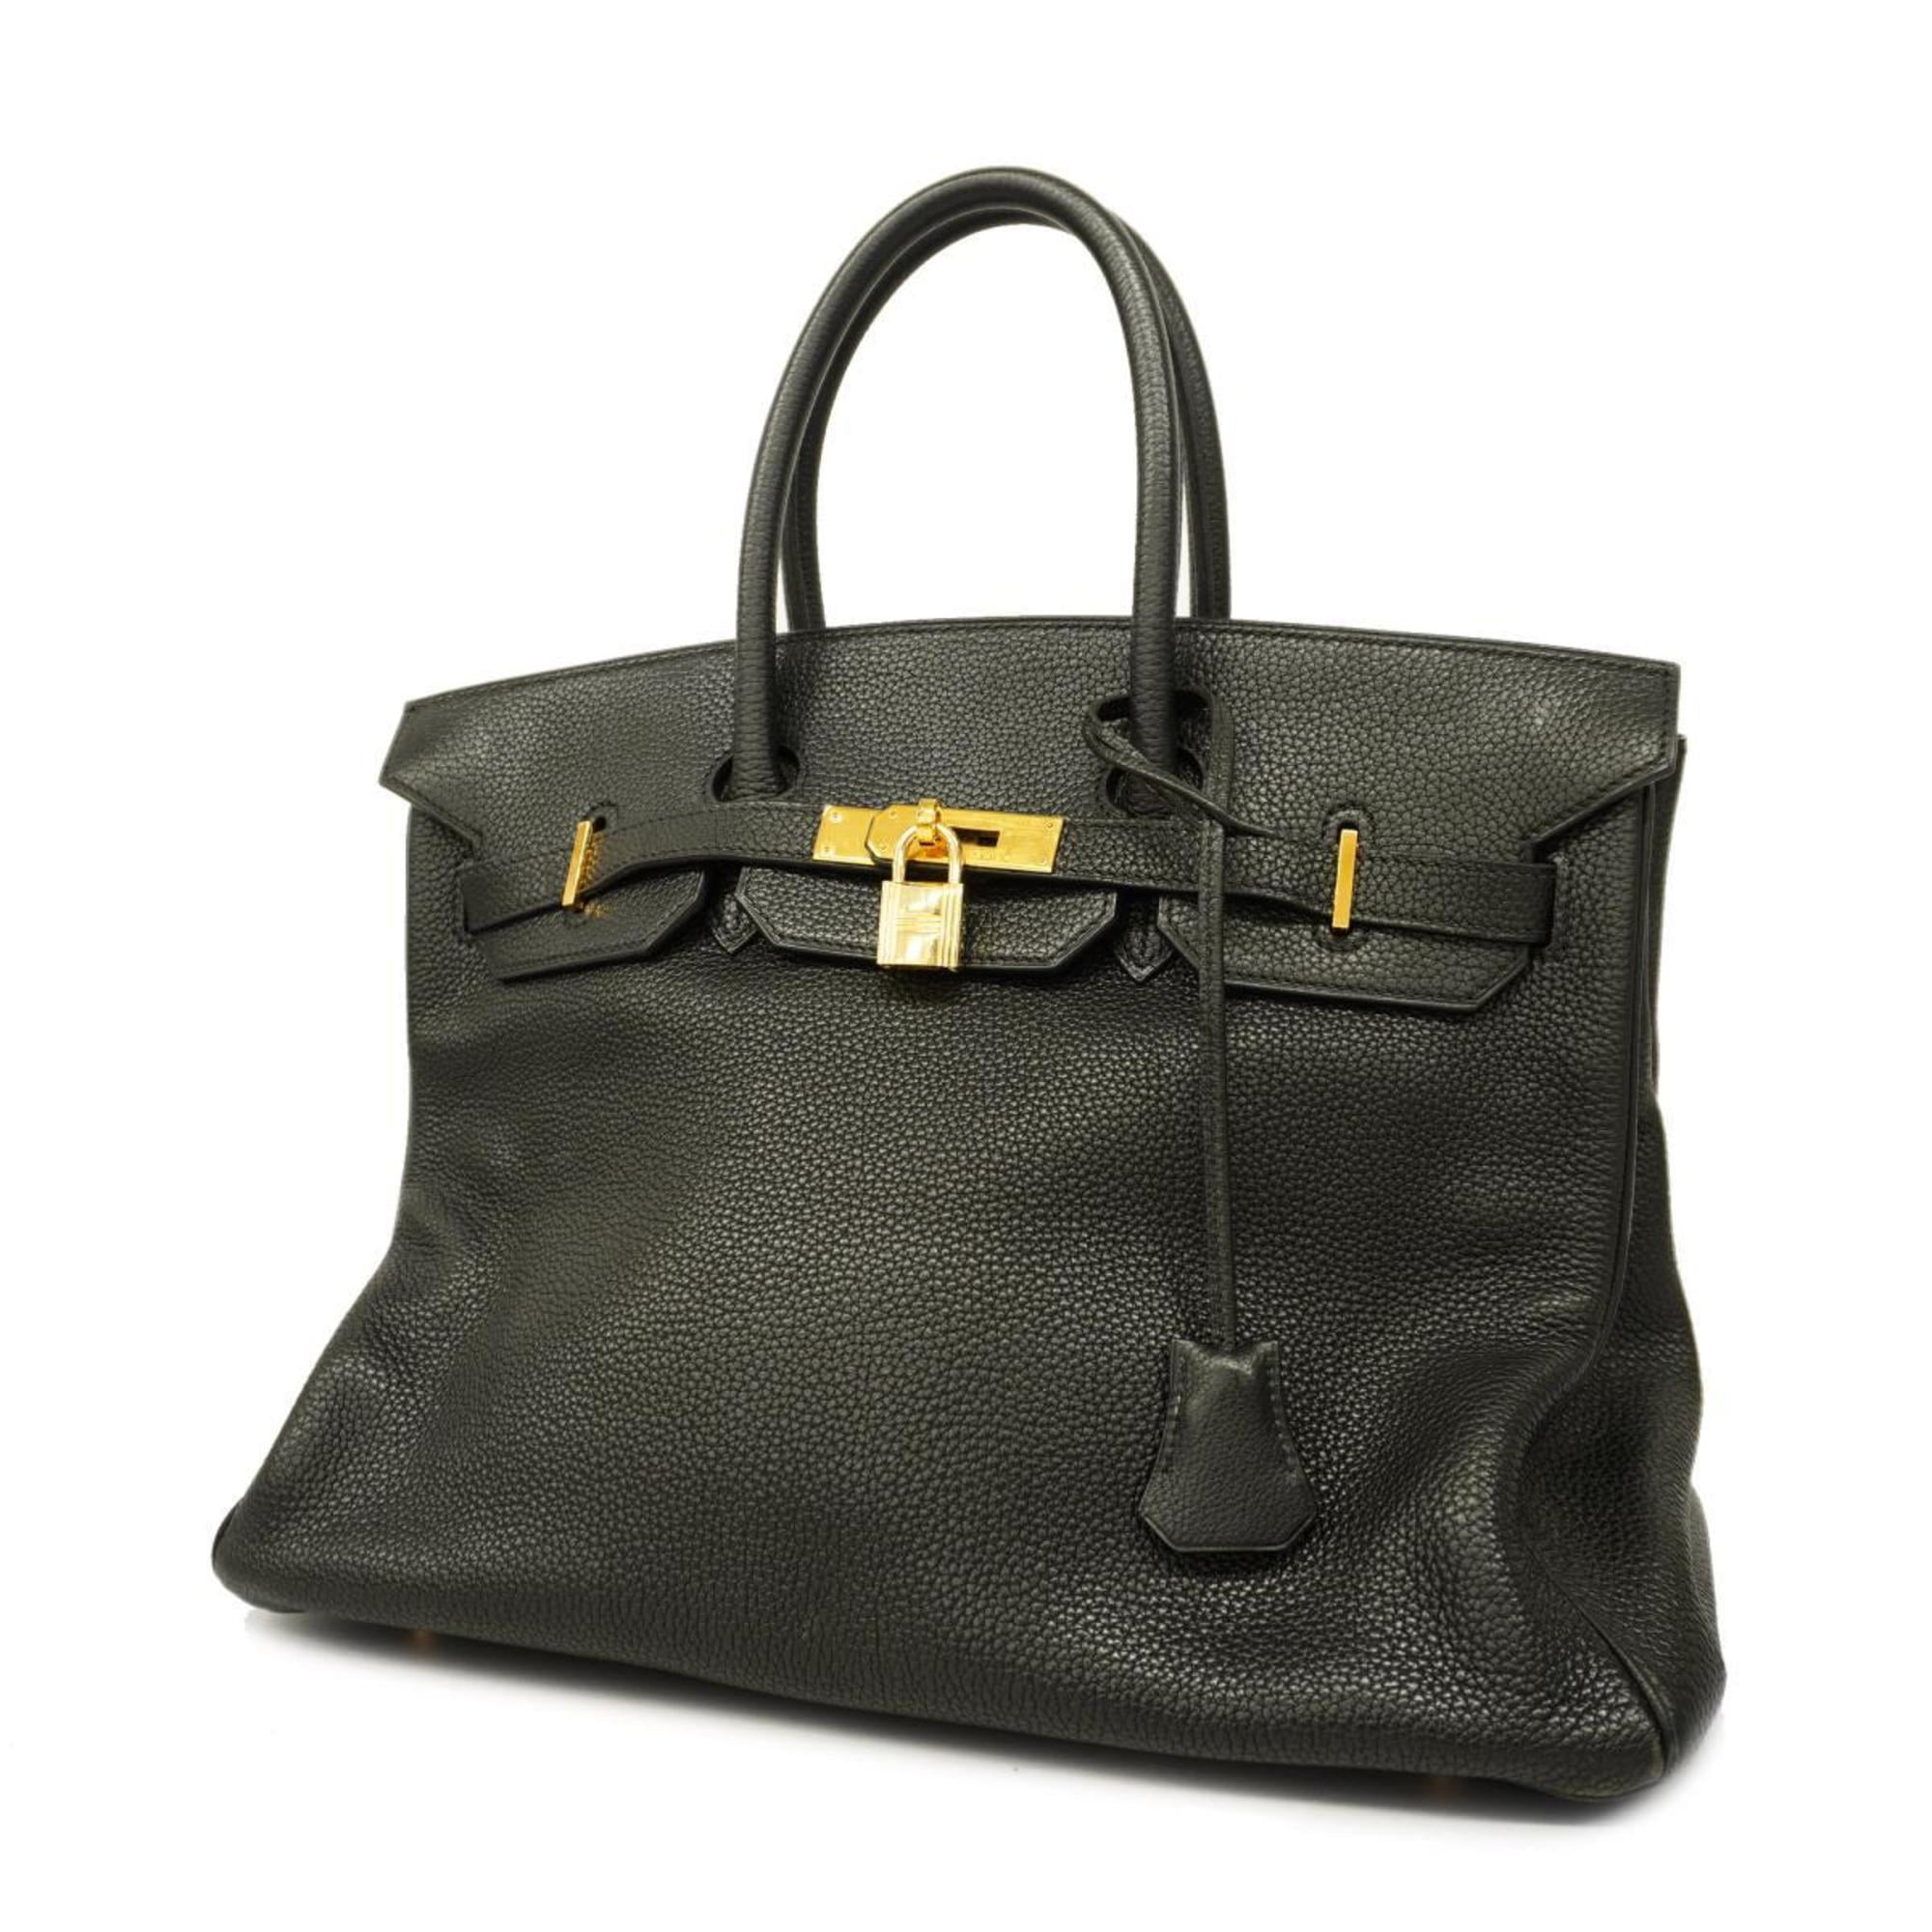 Hermès pre-owned Kelly 35 tote bag - Black